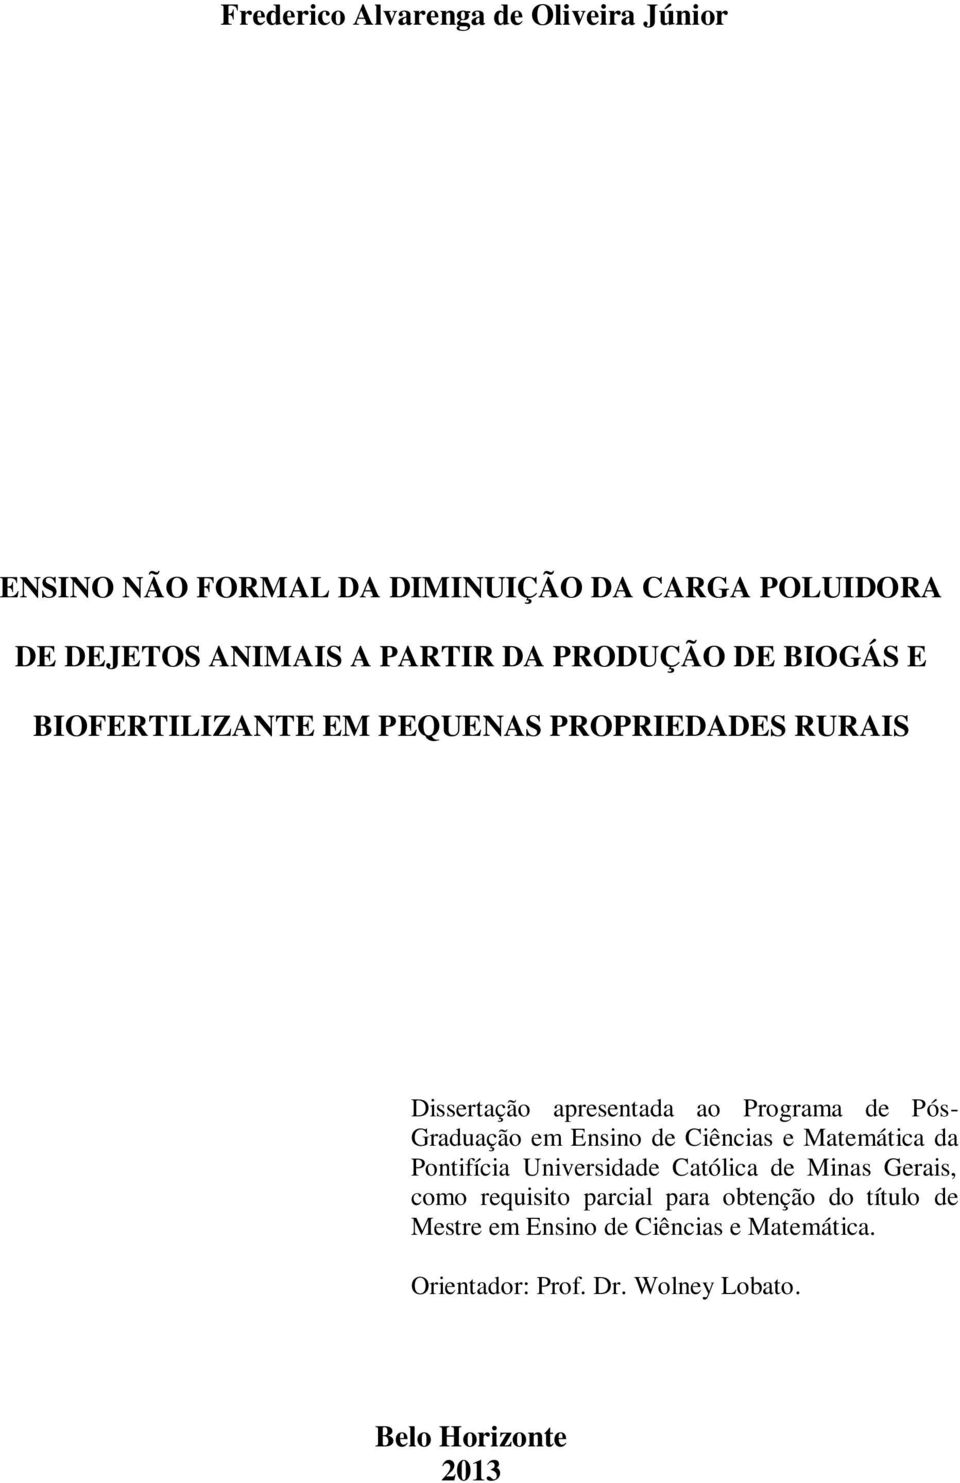 Graduação em Ensino de Ciências e Matemática da Pontifícia Universidade Católica de Minas Gerais, como requisito parcial